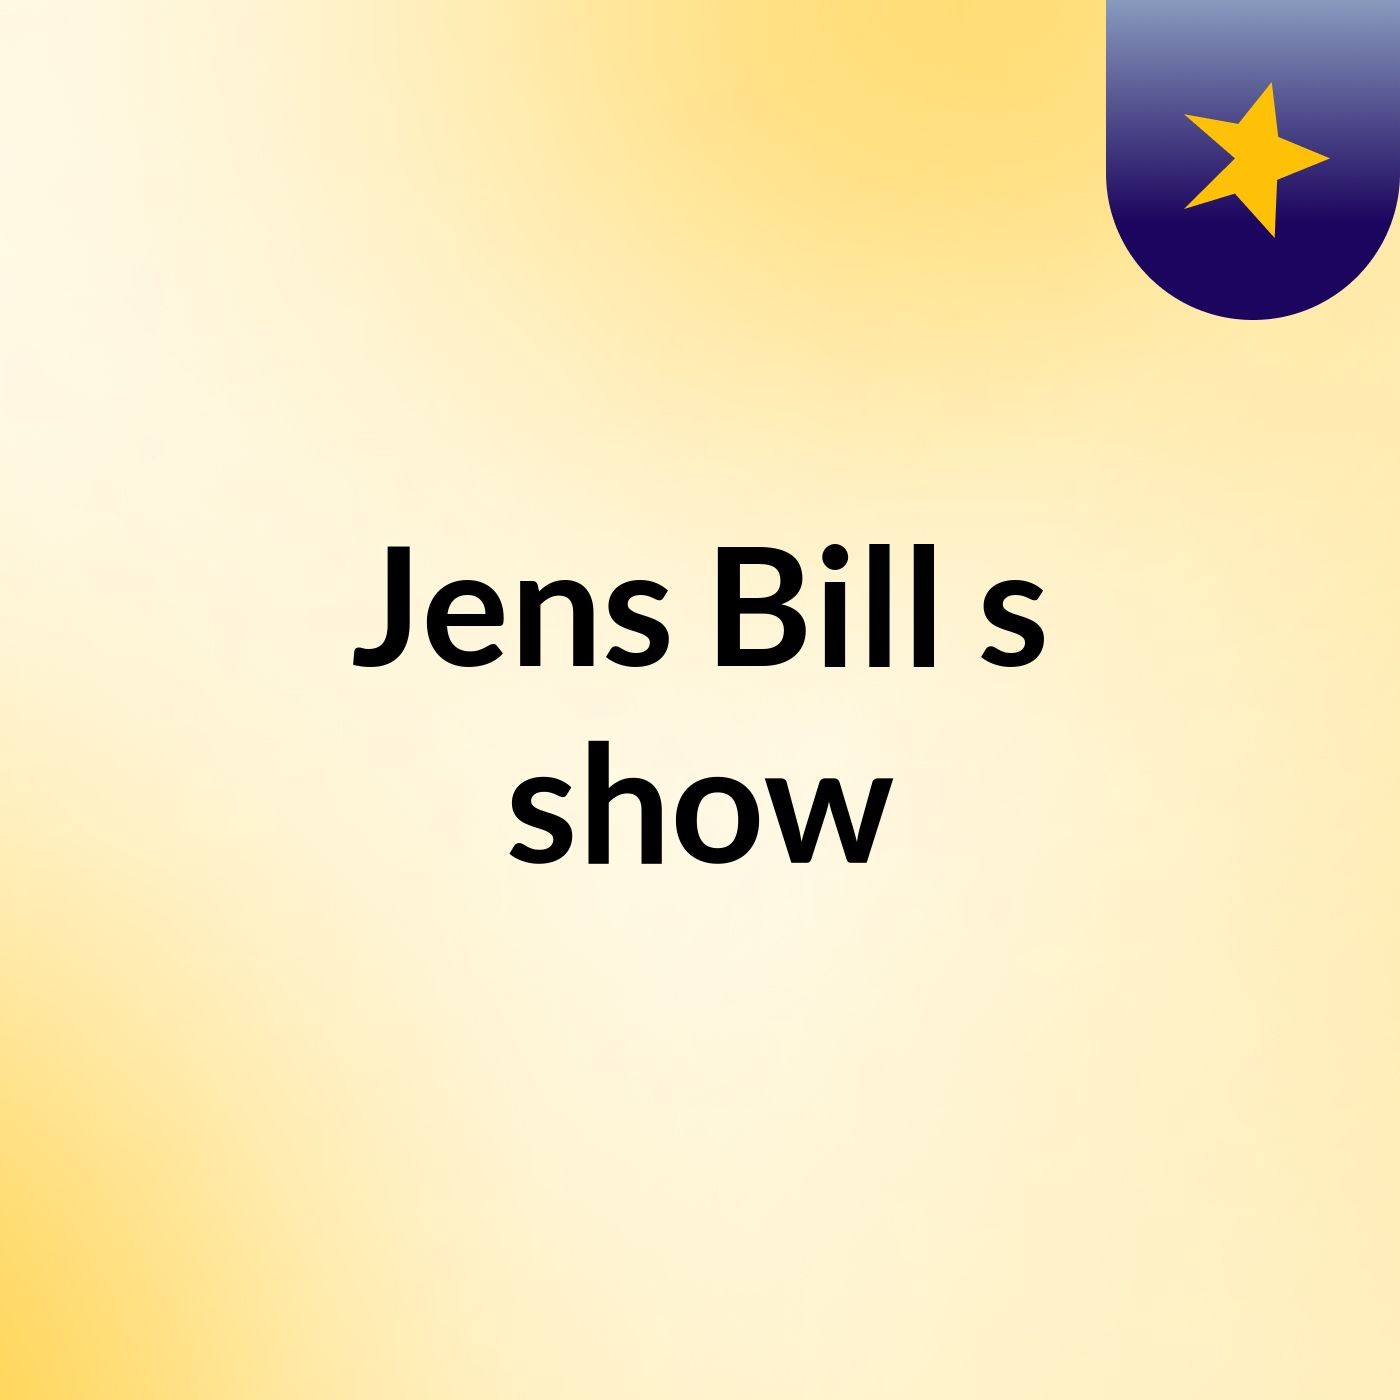 Jens Bill's show